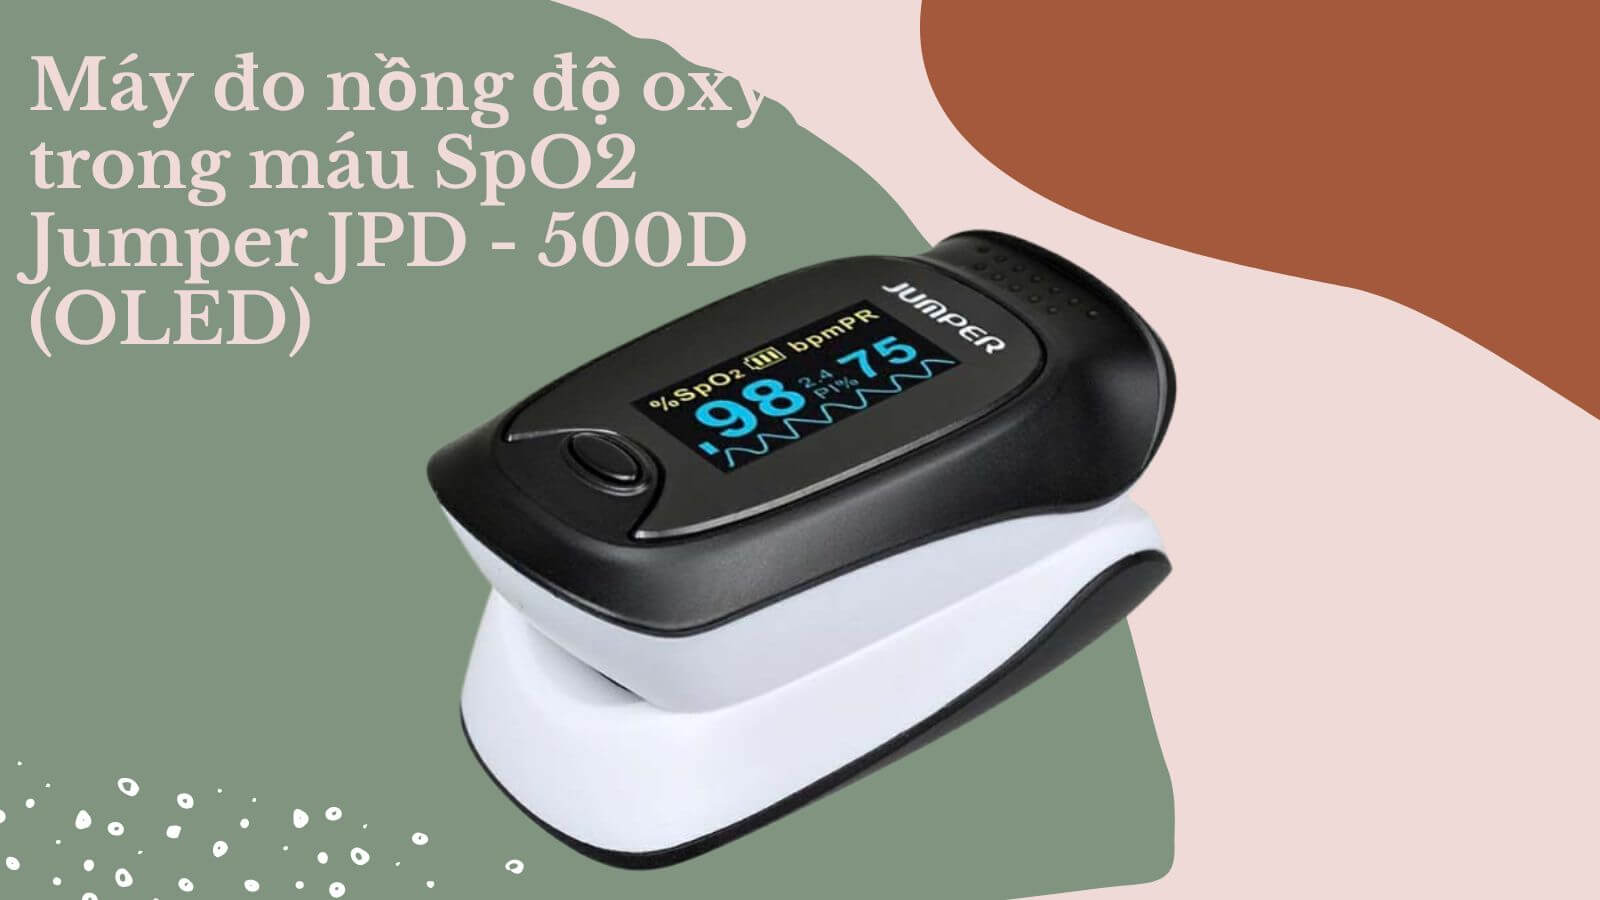 Sản phẩm máy đo nồng độ oxy trong máu SpO2